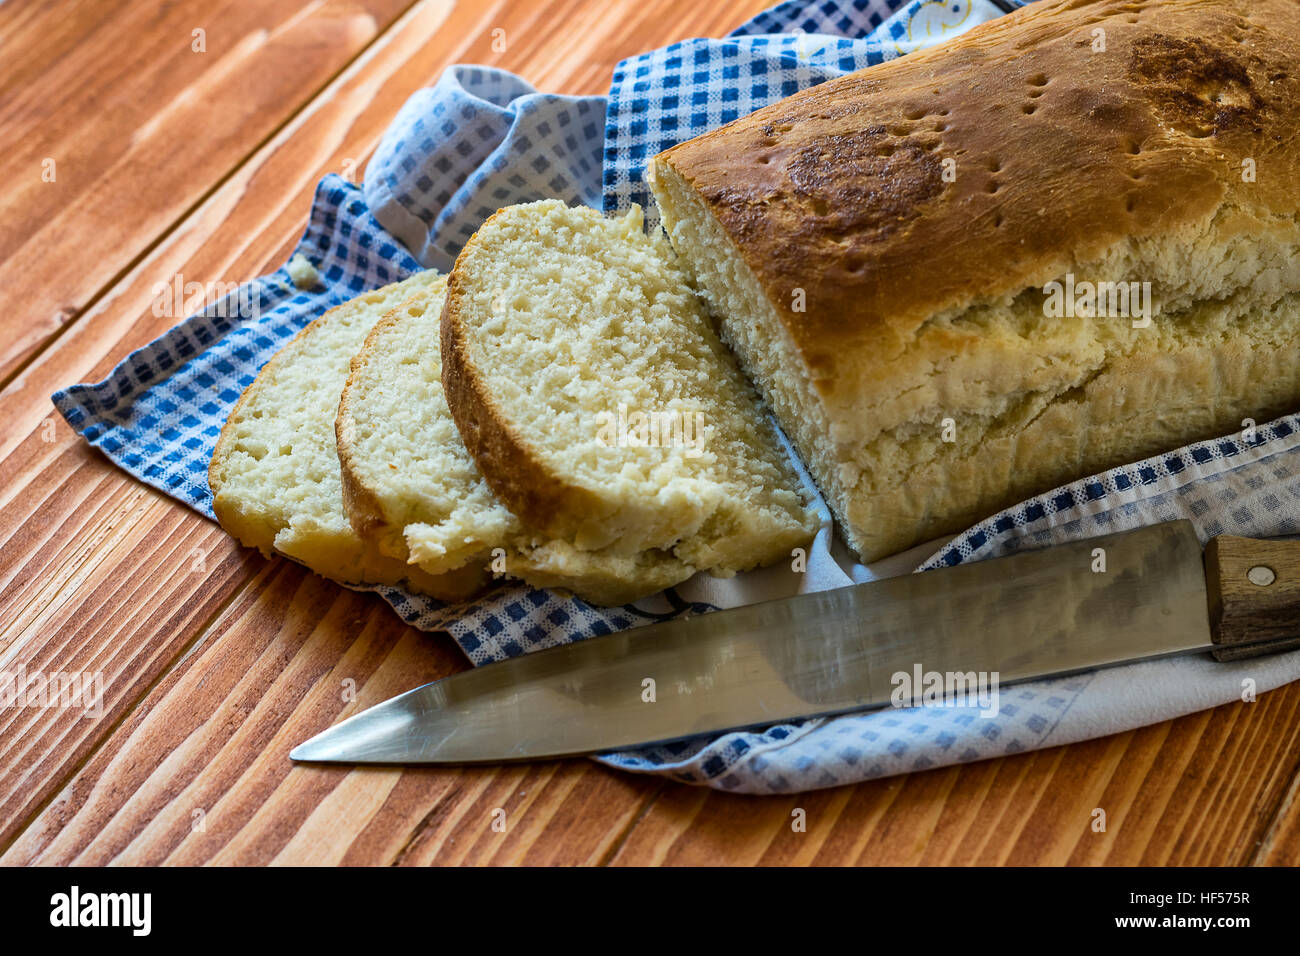 Tranches de pain fait maison sur une table en bois avec un couteau Banque D'Images